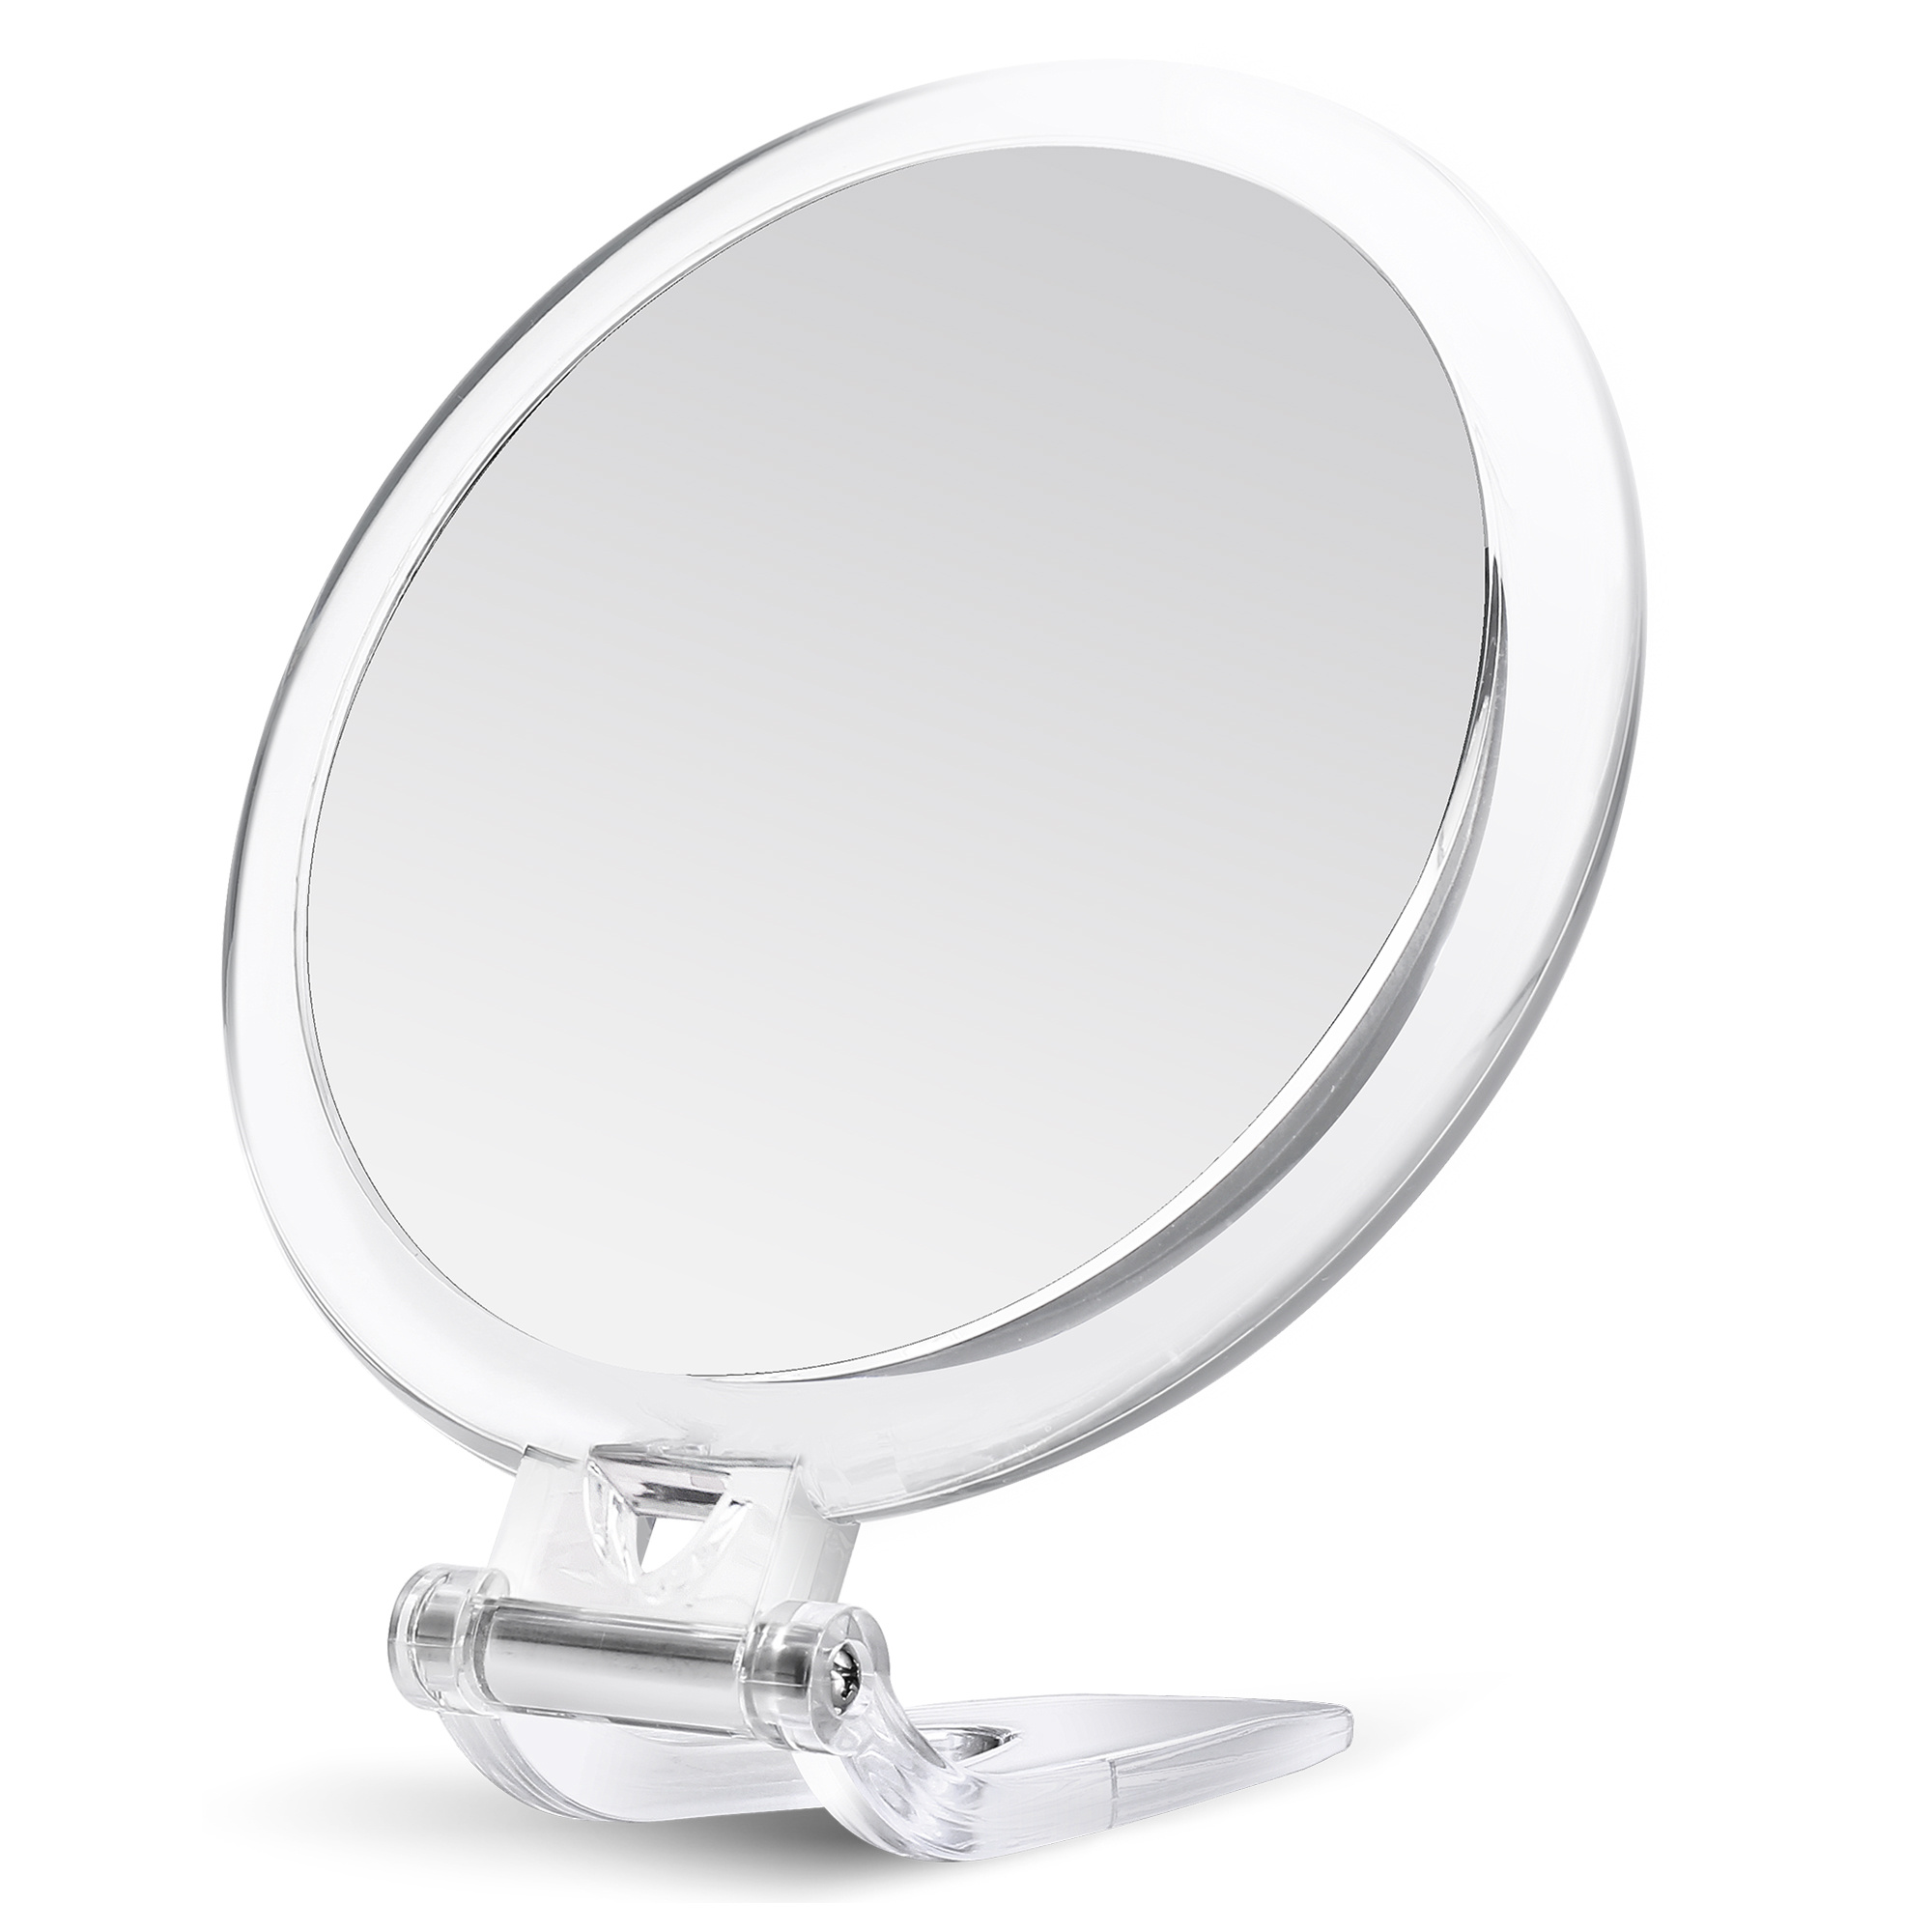 Espejo de aumento 20x, espejo de mano de maquillaje redondo de 3.5 pulgadas  con dos ventosas, para aplicación, pinzas, eliminación de puntos negros